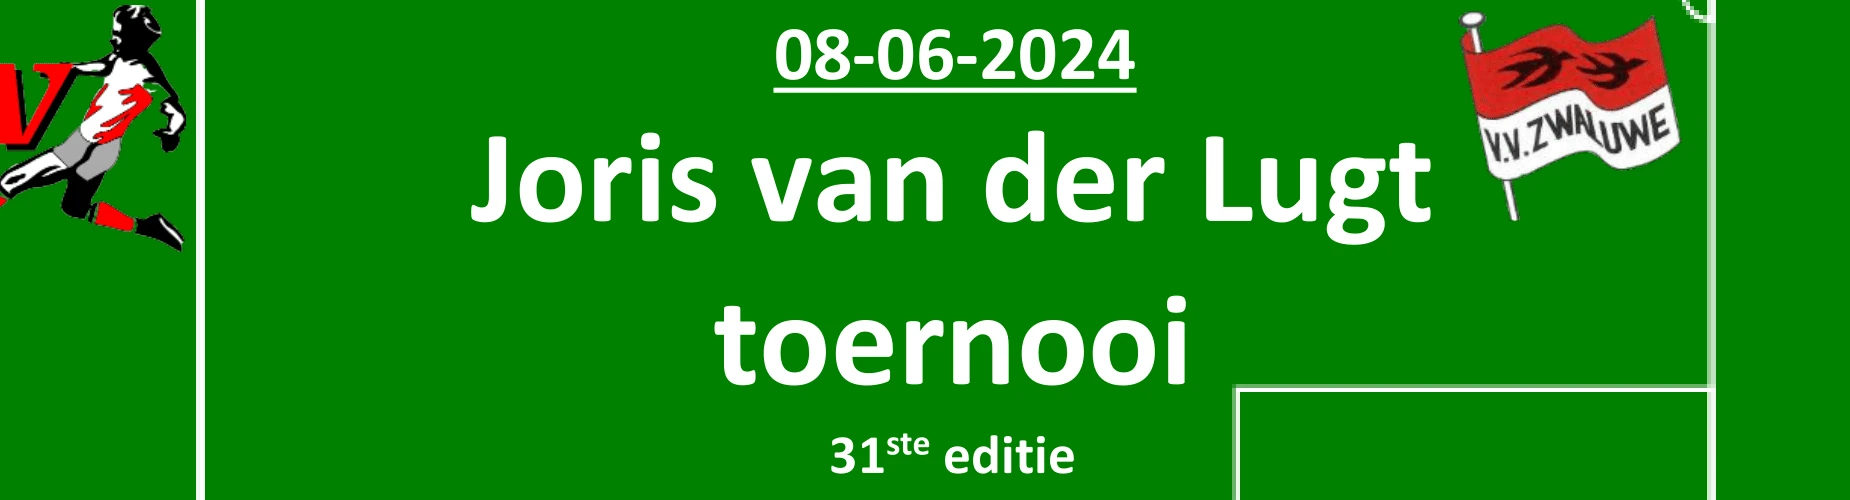 Banner - O11 - Joris van der Lugt Toernooi - vv Zwaluwe - Lage Zwaluwe